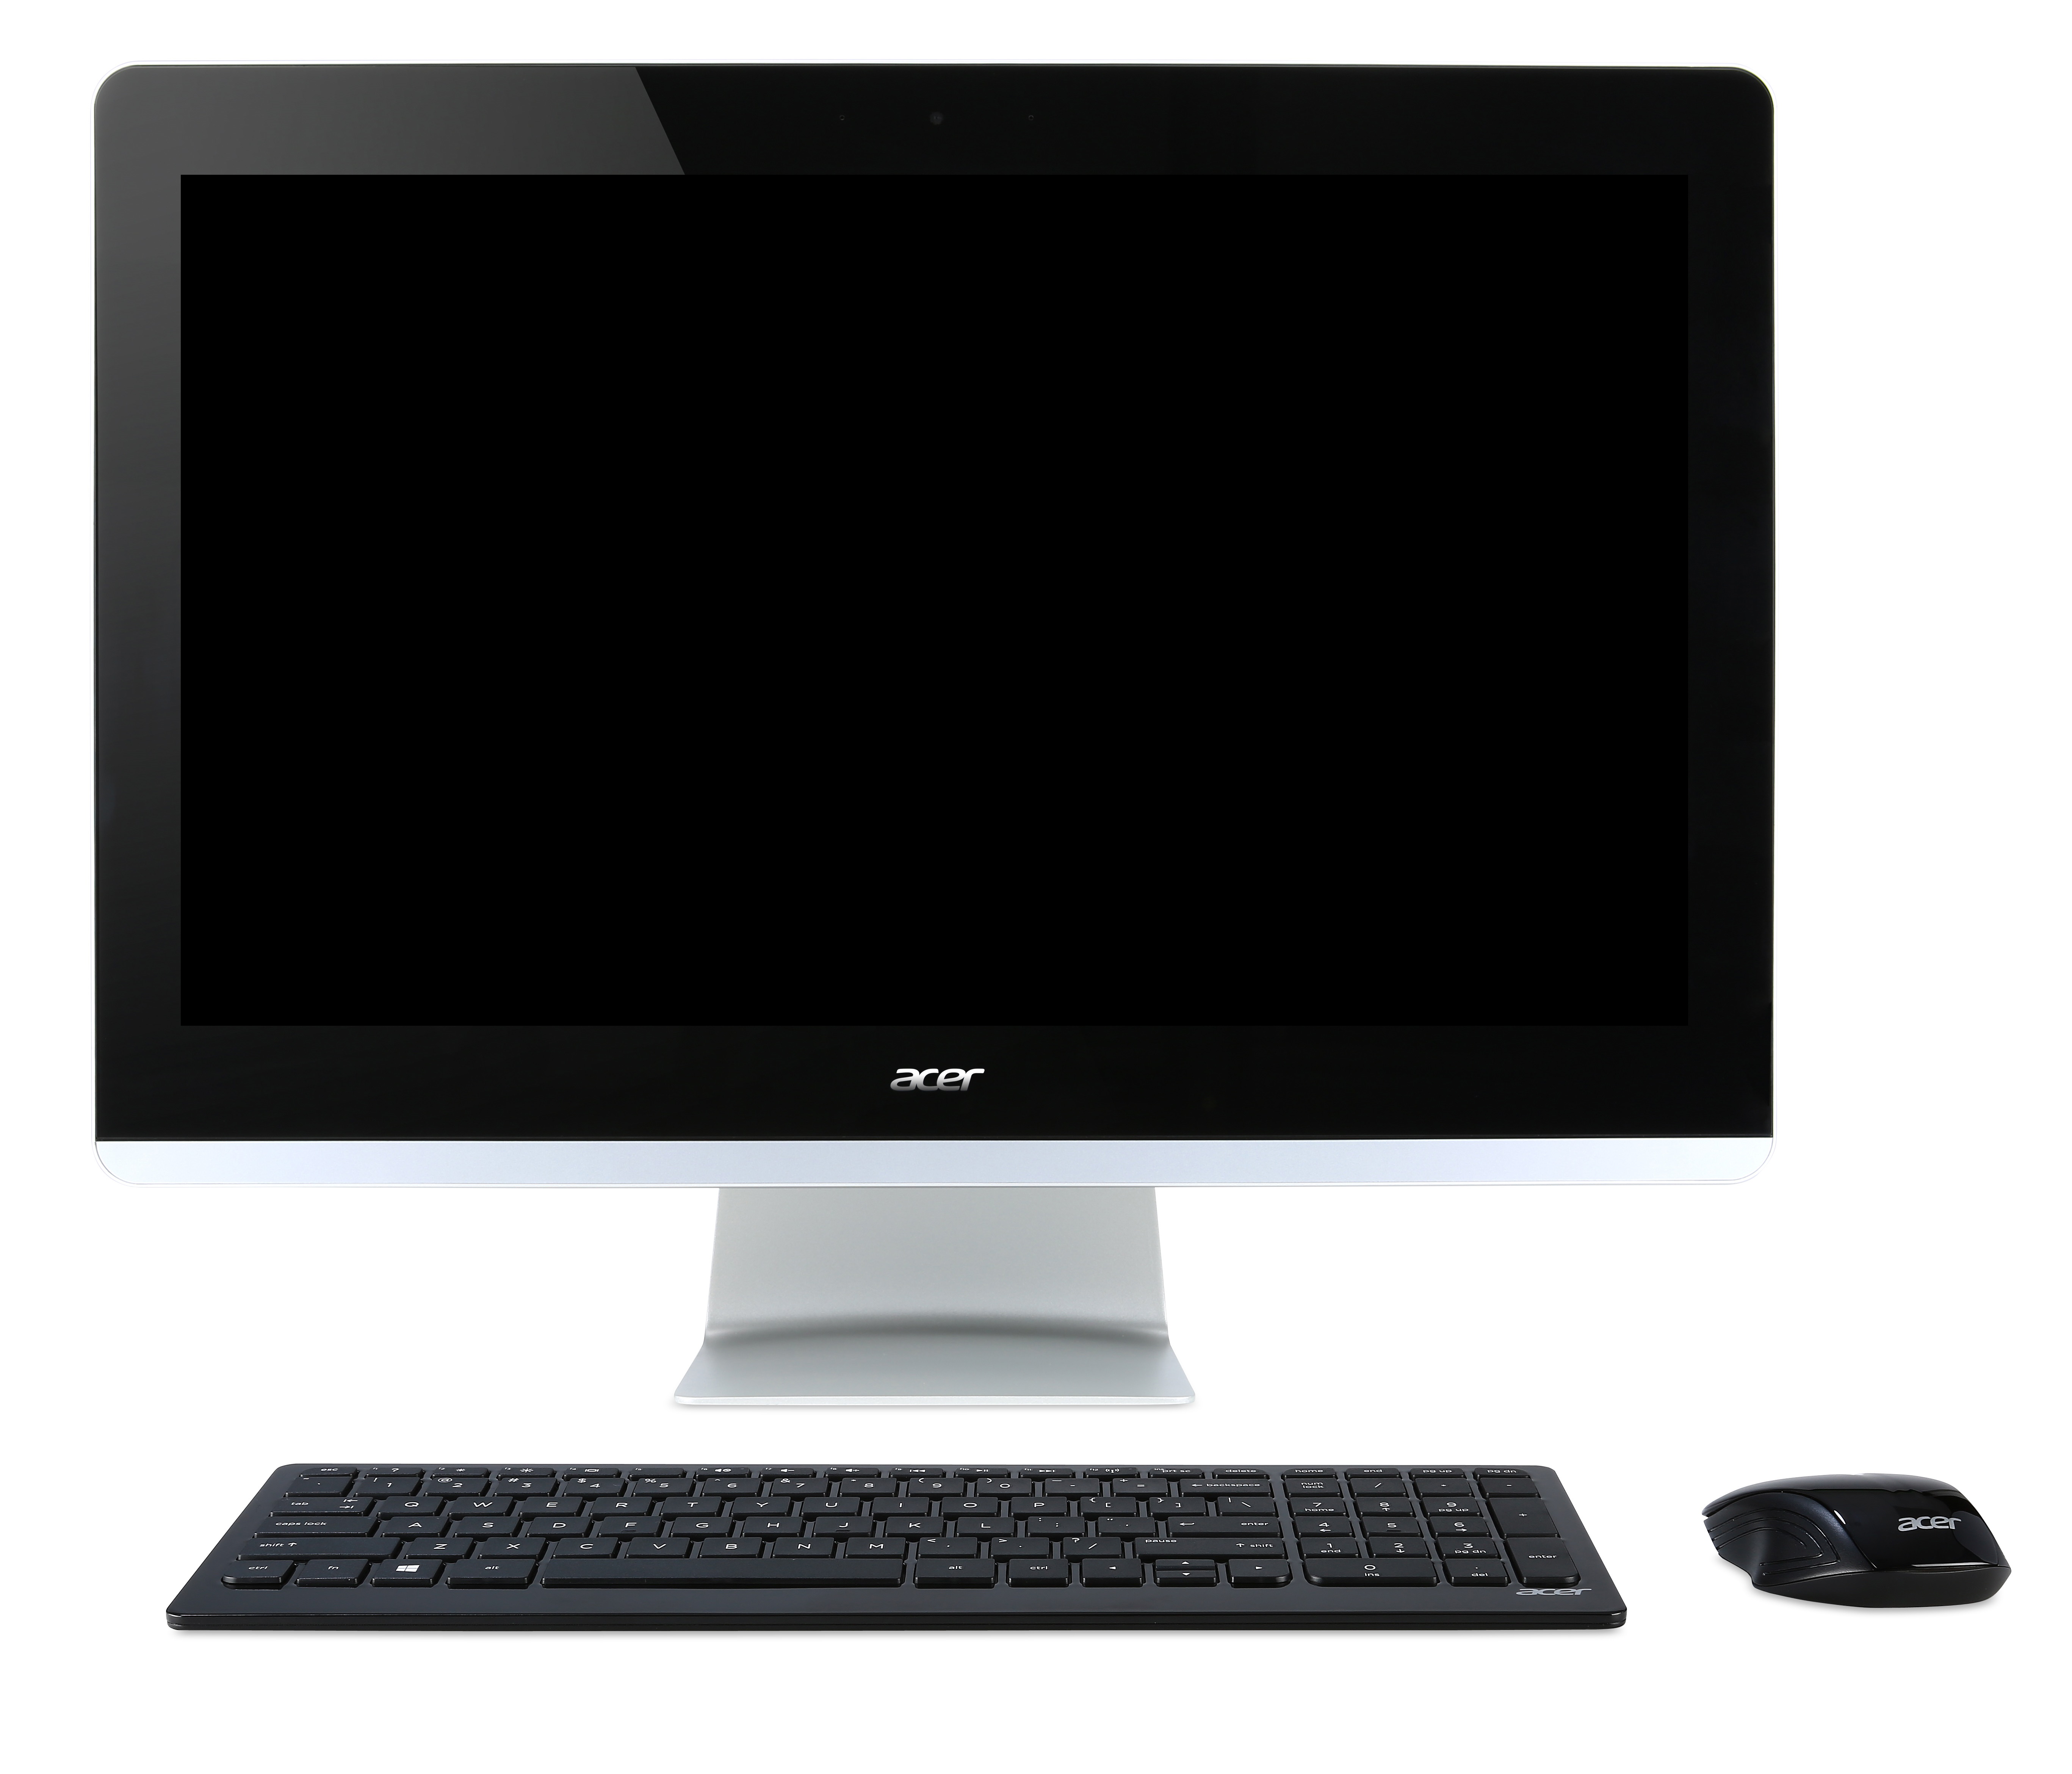 Черные моноблоки acer. Моноблок Acer Aspire z3-710. Acer Aspire z20-780. Компьютер моноблок Acer Aspire z3-715. Персональный компьютер-моноблок Acer, модель:vz4880g.